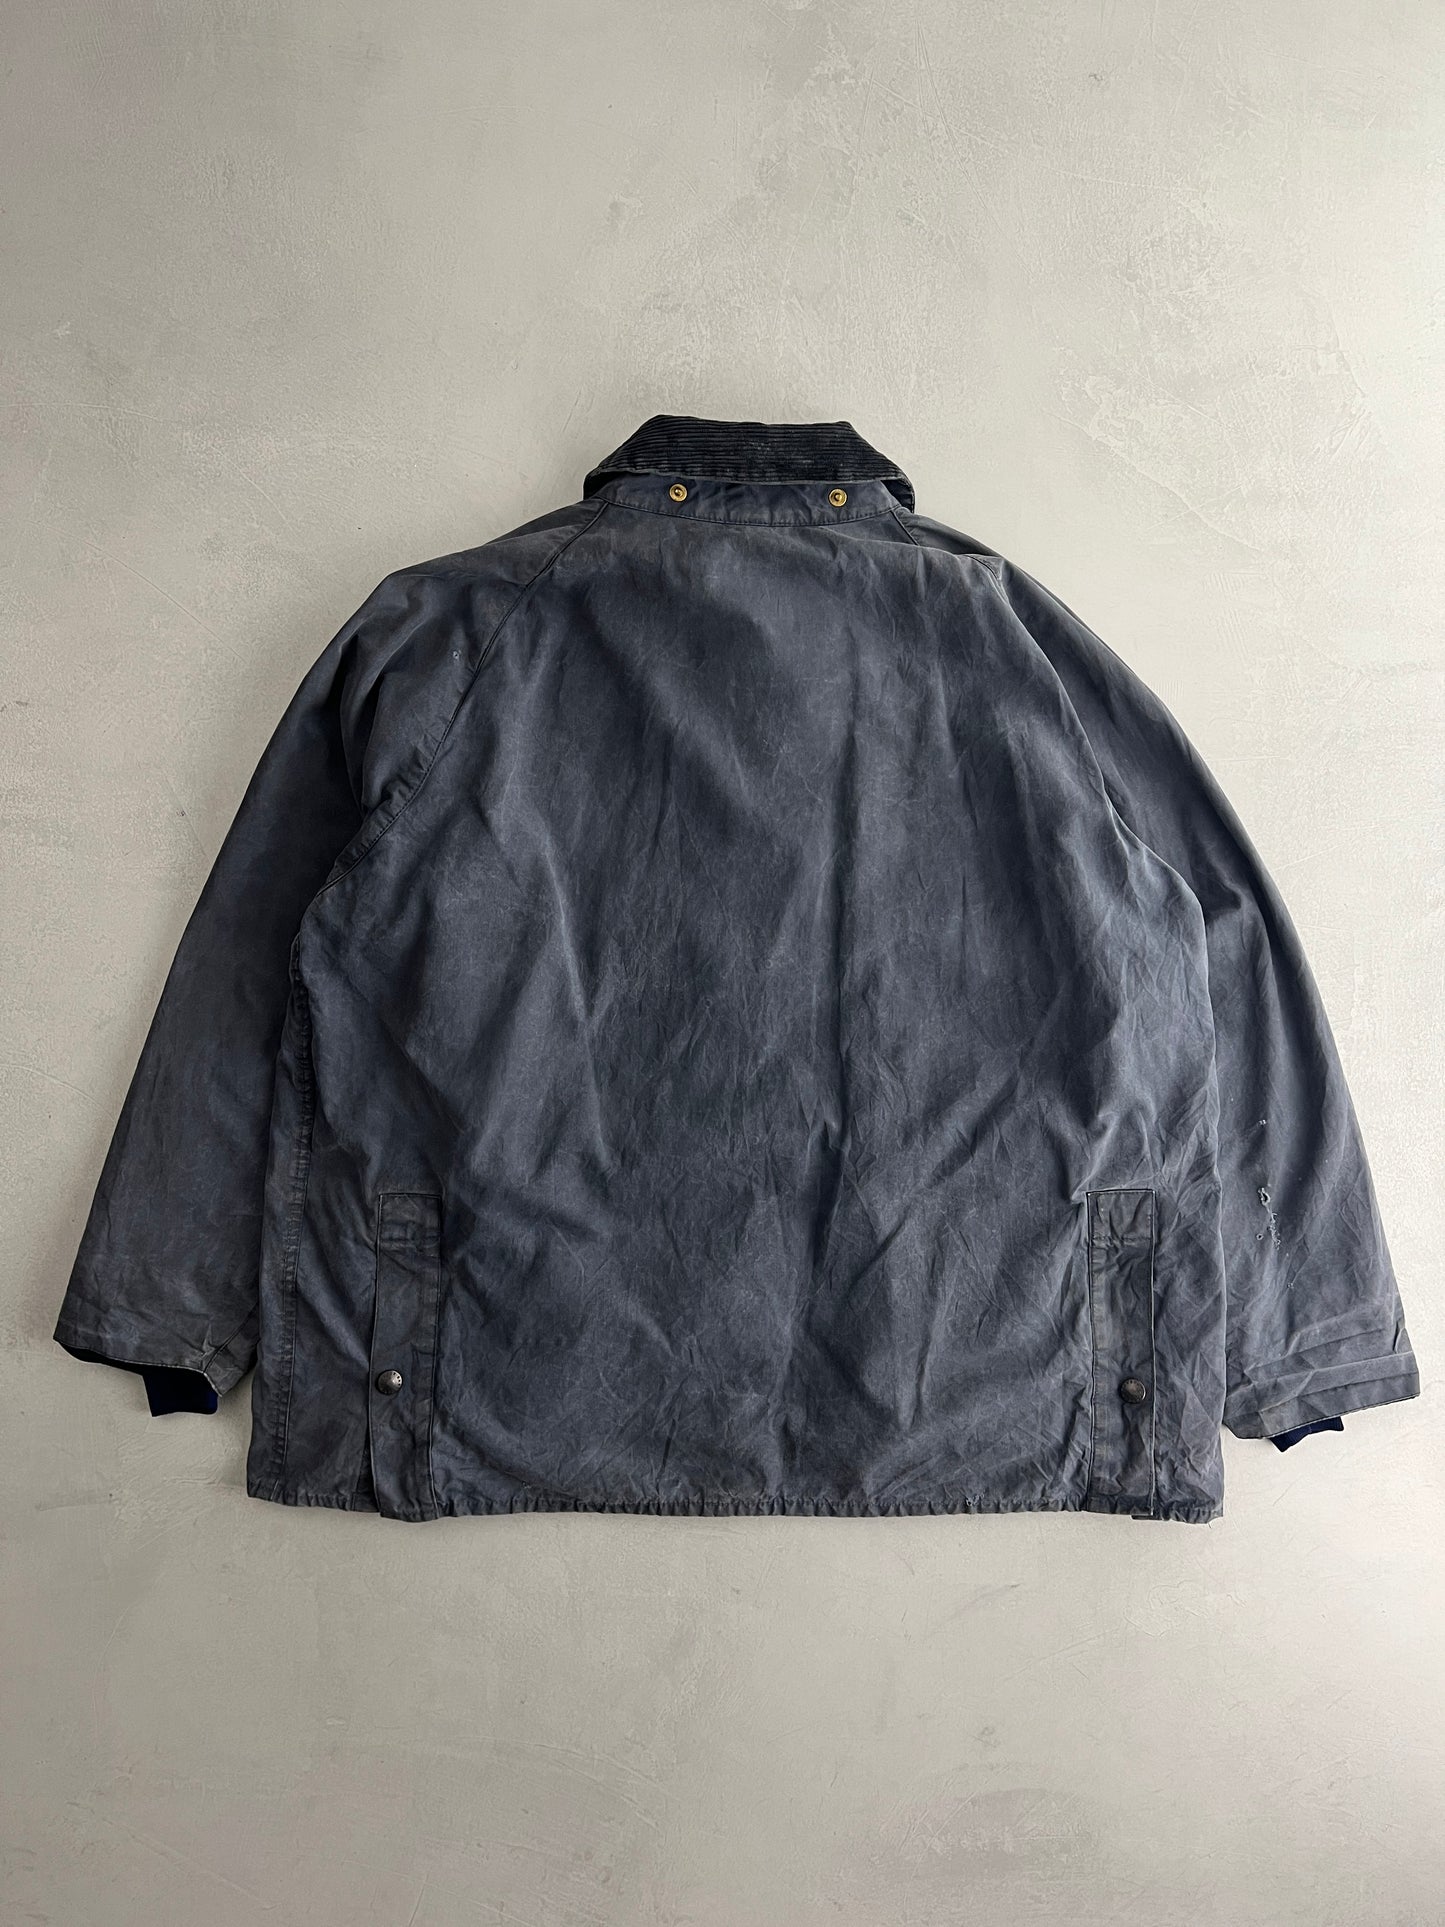 Barbour Bedale Jacket [L/XL]